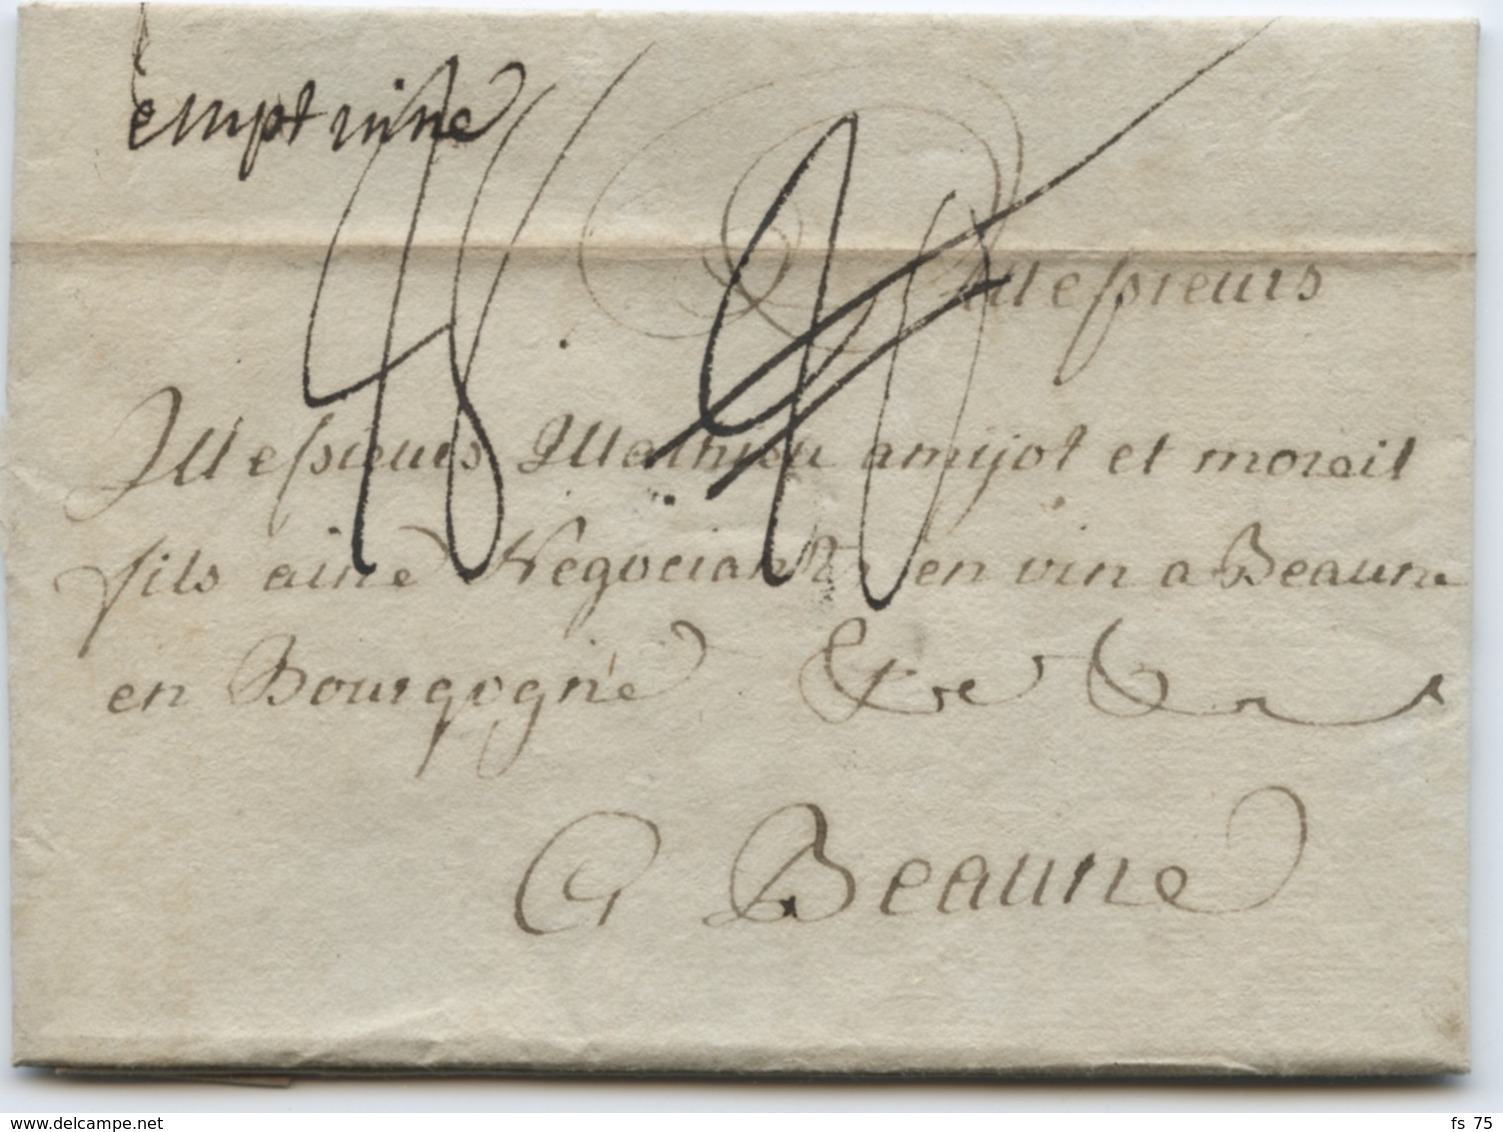 BELGIQUE - EMPTINNE MANUSCRIT SUR LETTRE AVEC TEXTE DE HAVELANGE POUR LA FRANCE, 1786 - 1714-1794 (Paises Bajos Austriacos)